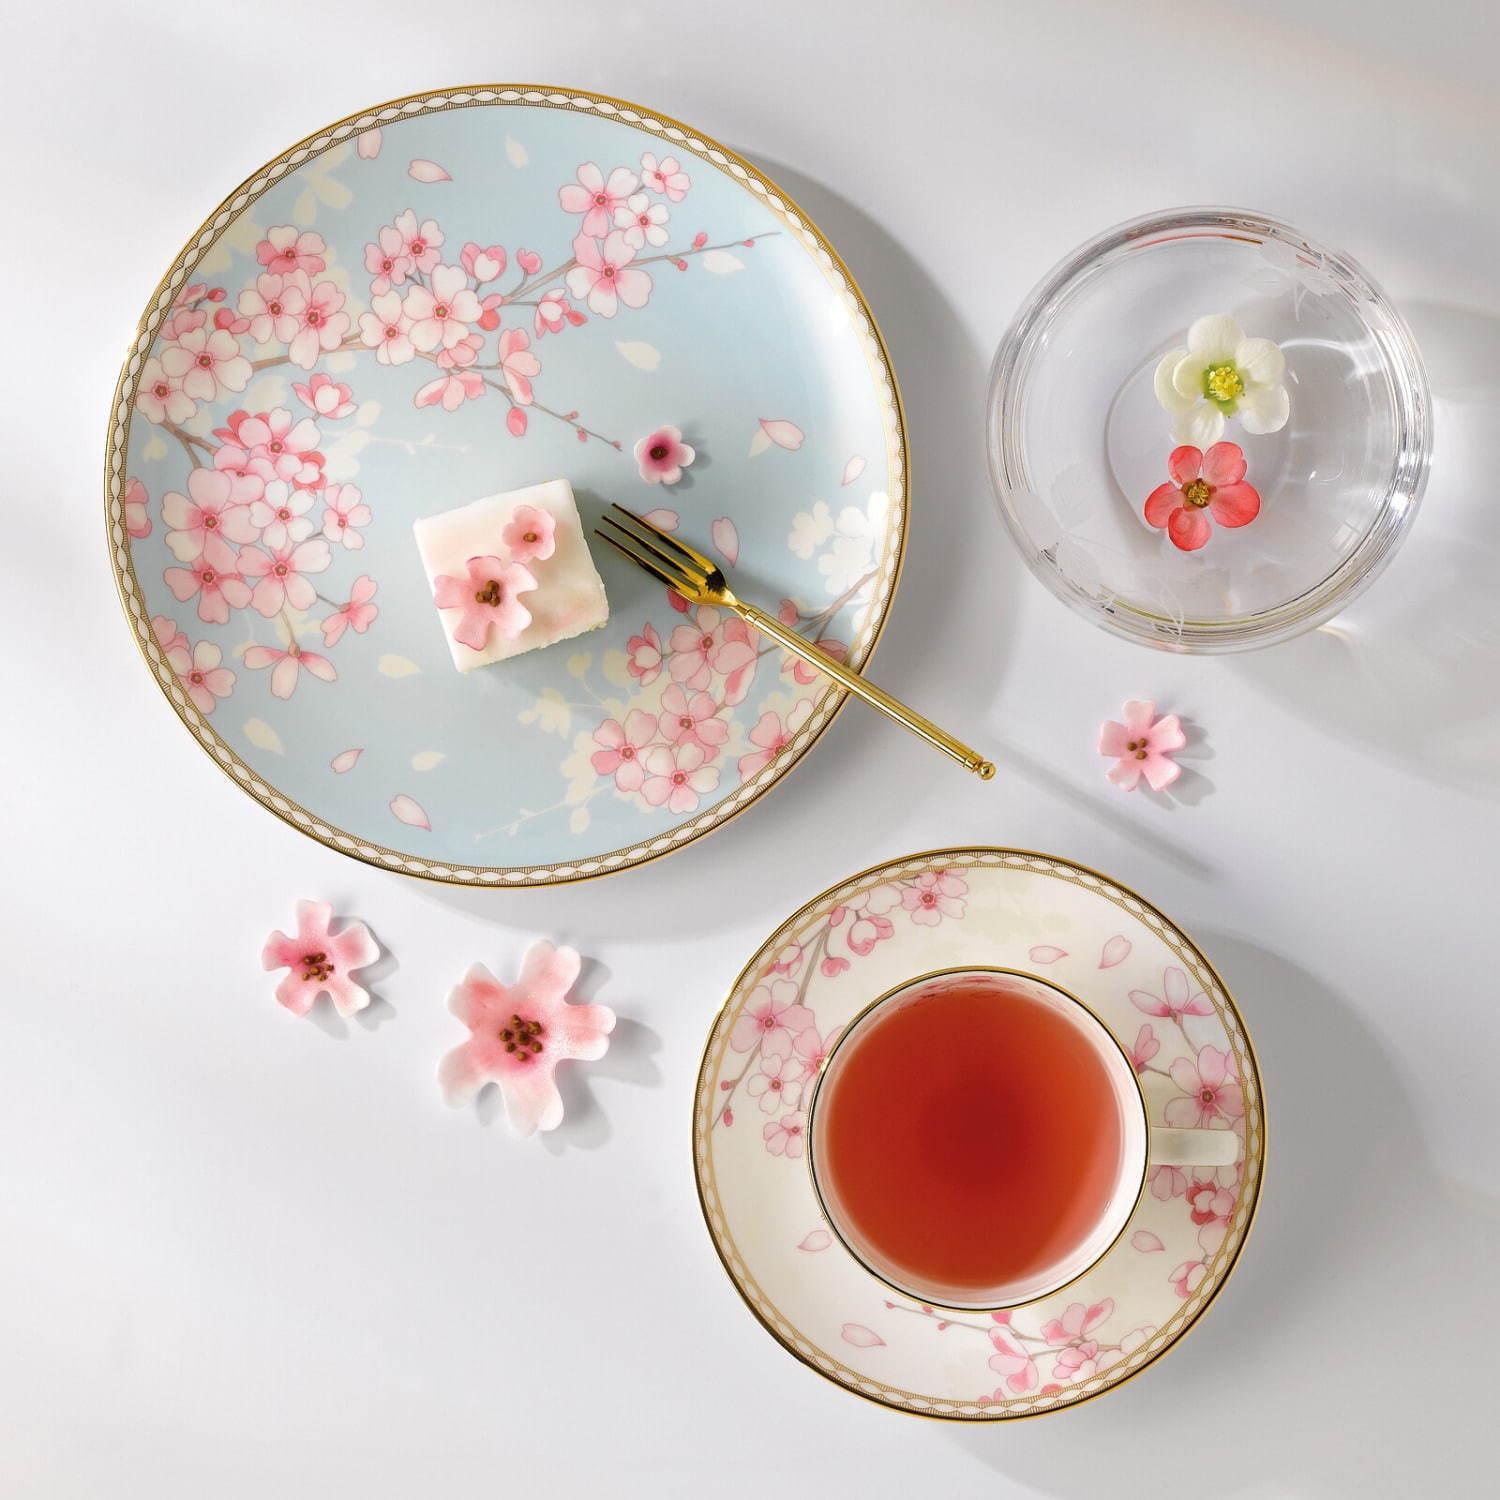 ウェッジウッド“桜の花びら”を描いた「スプリング ブロッサム」テーブルウェアの限定セット コピー